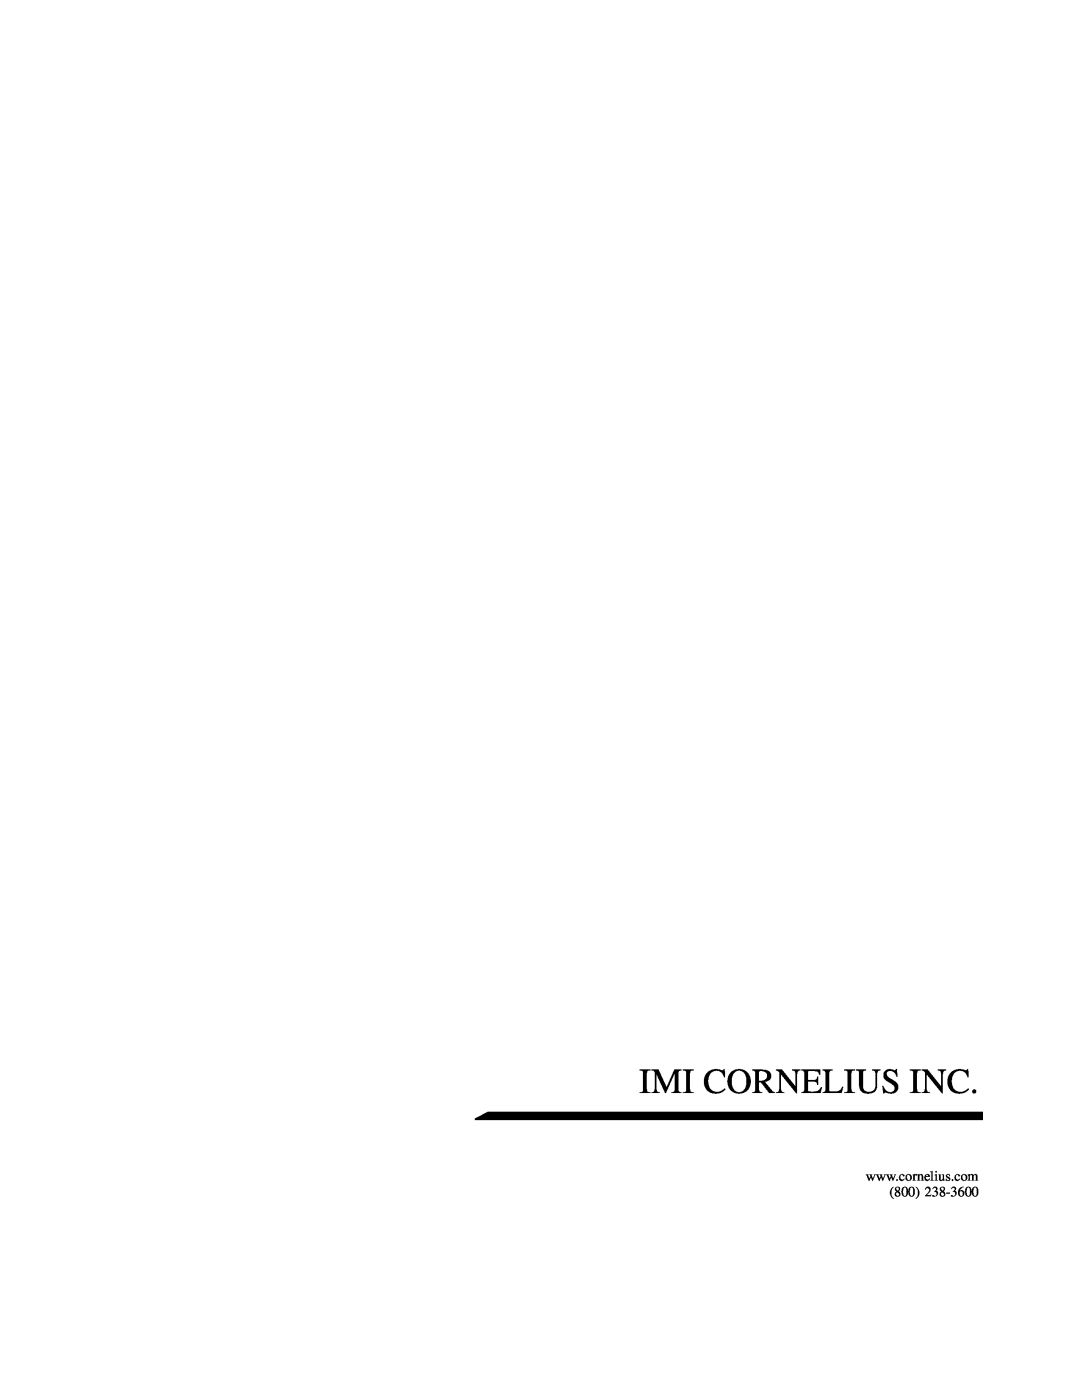 Cornelius PR150 BC manual Imi Cornelius Inc 